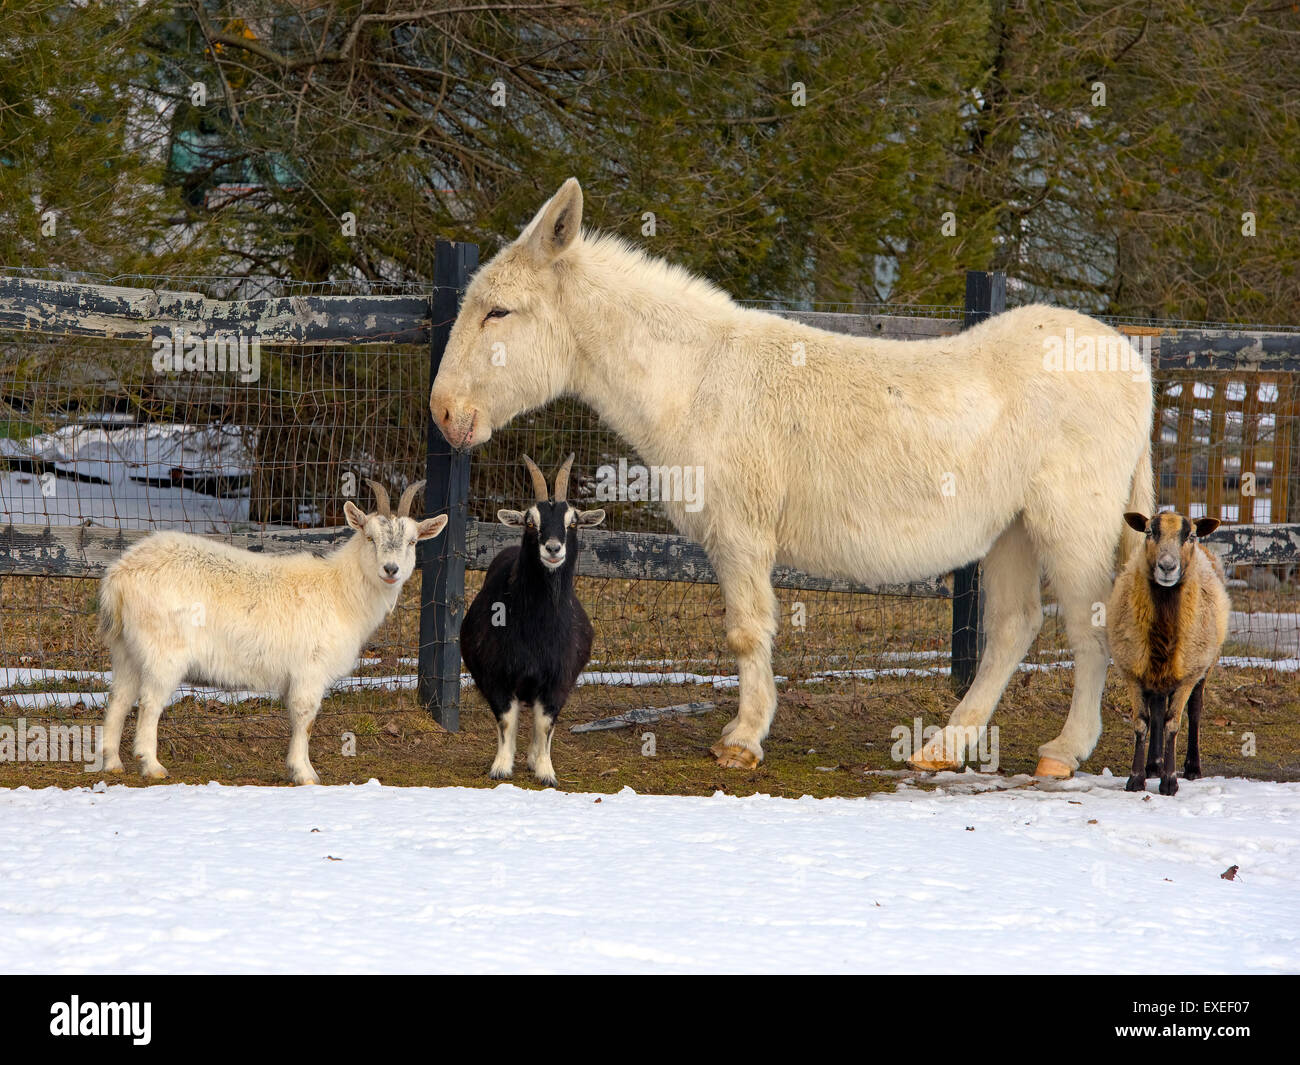 Deux chèvres, une mule et un mouton brebis debout dans la neige Banque D'Images